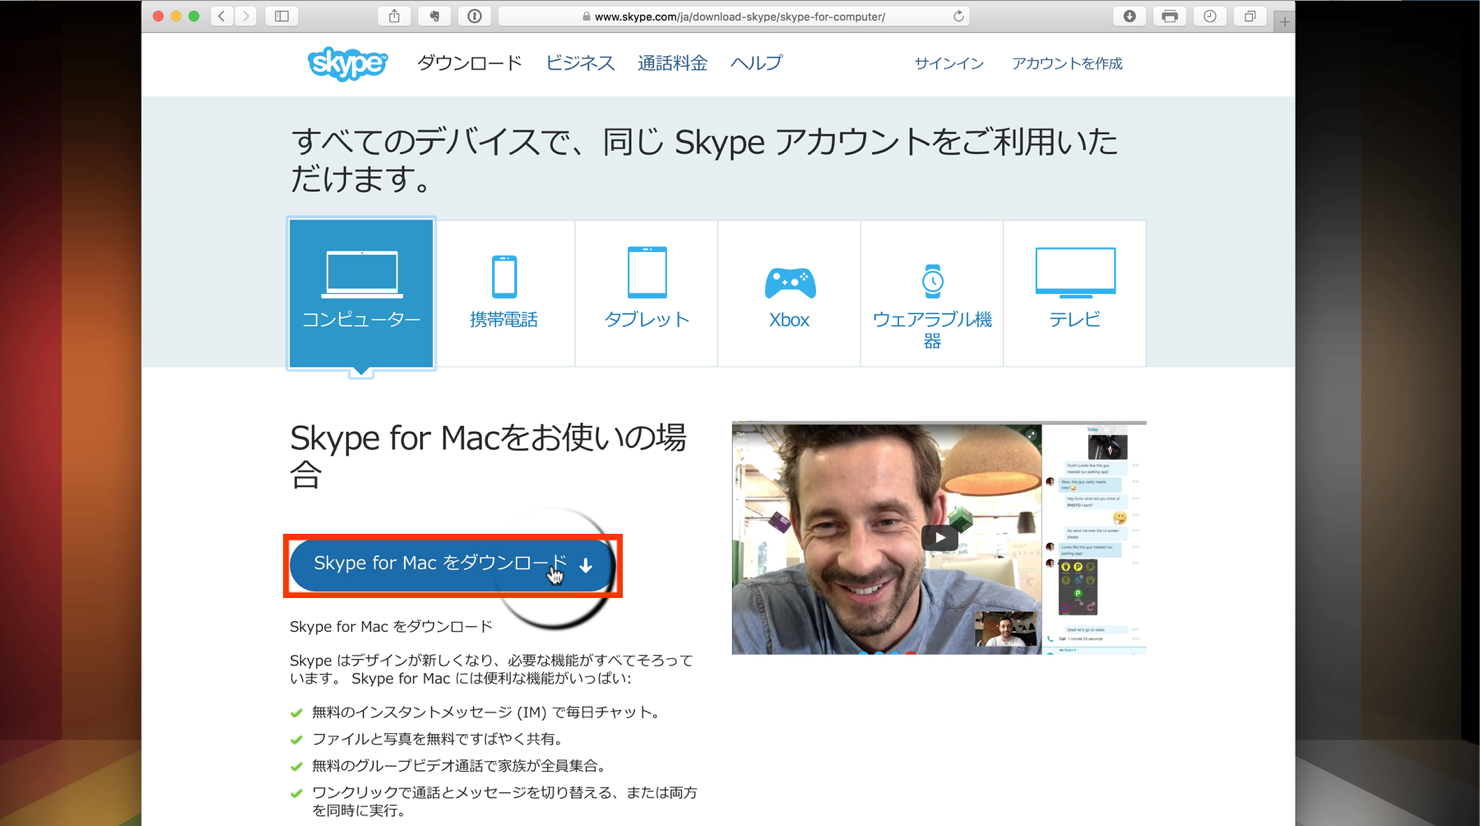 skype for mac 2015